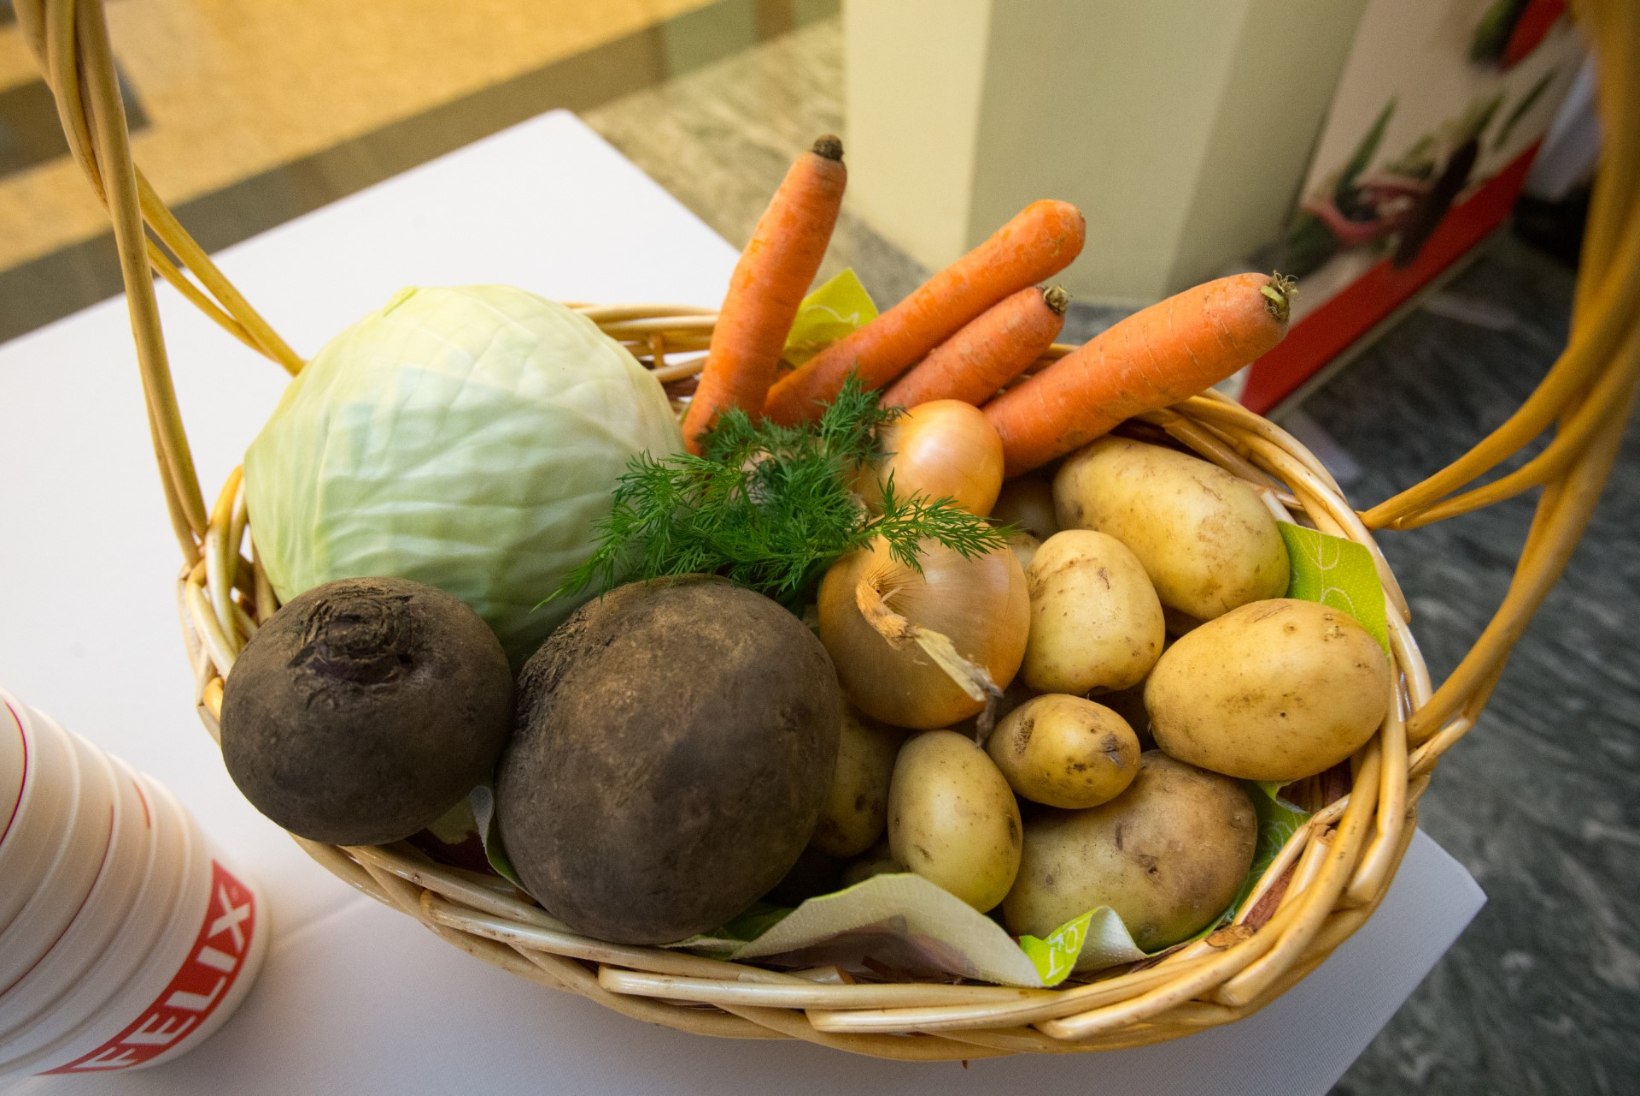 Eesti lapsed on keskmisest allergilisemad kartuli ja porgandi vastu